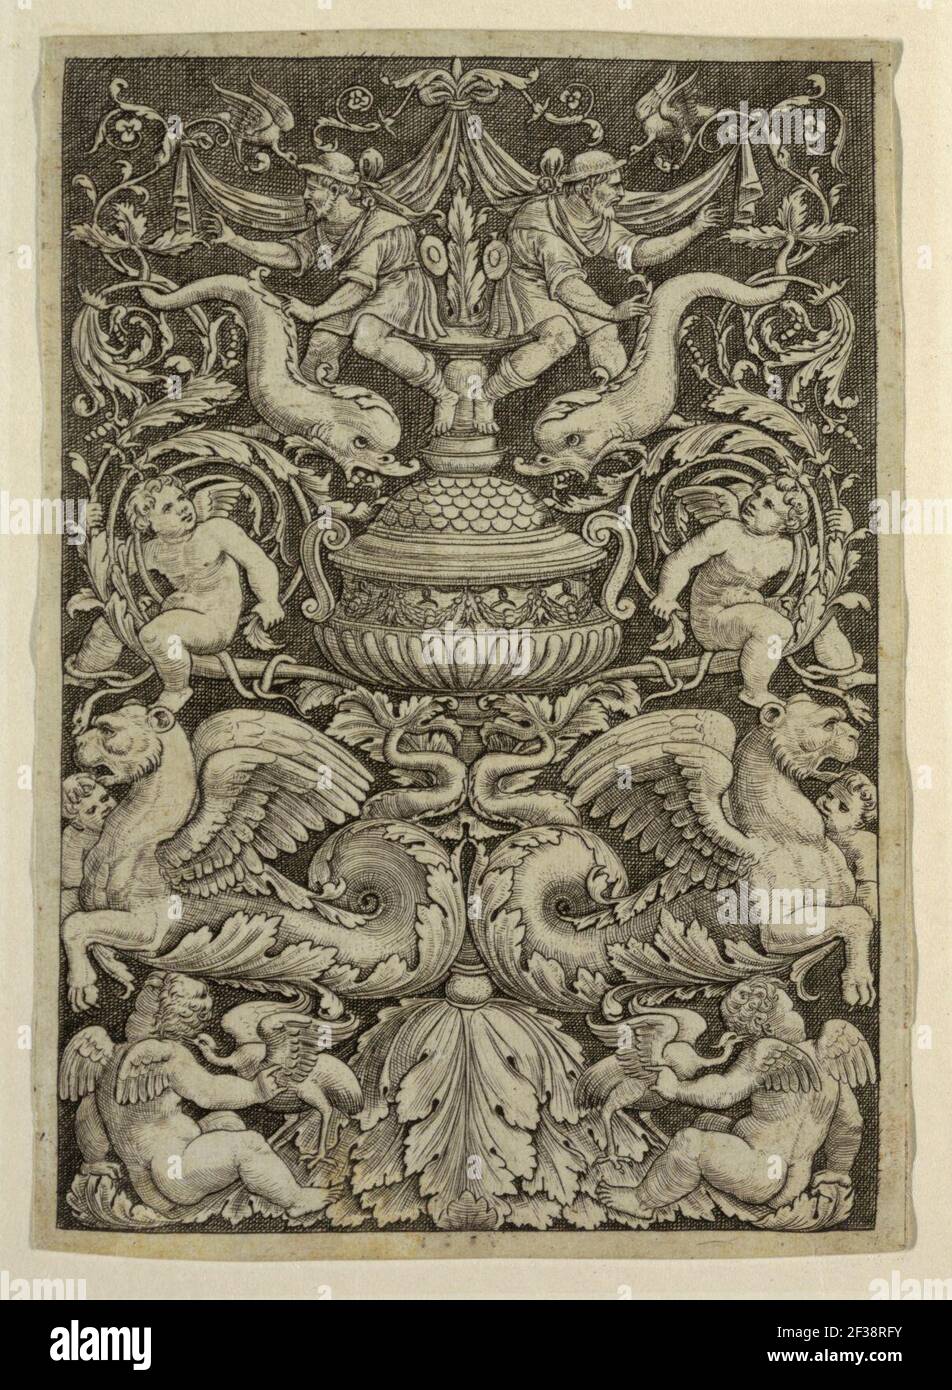 Stampa grottesca con delfini e leoni alati, 1532 Foto Stock